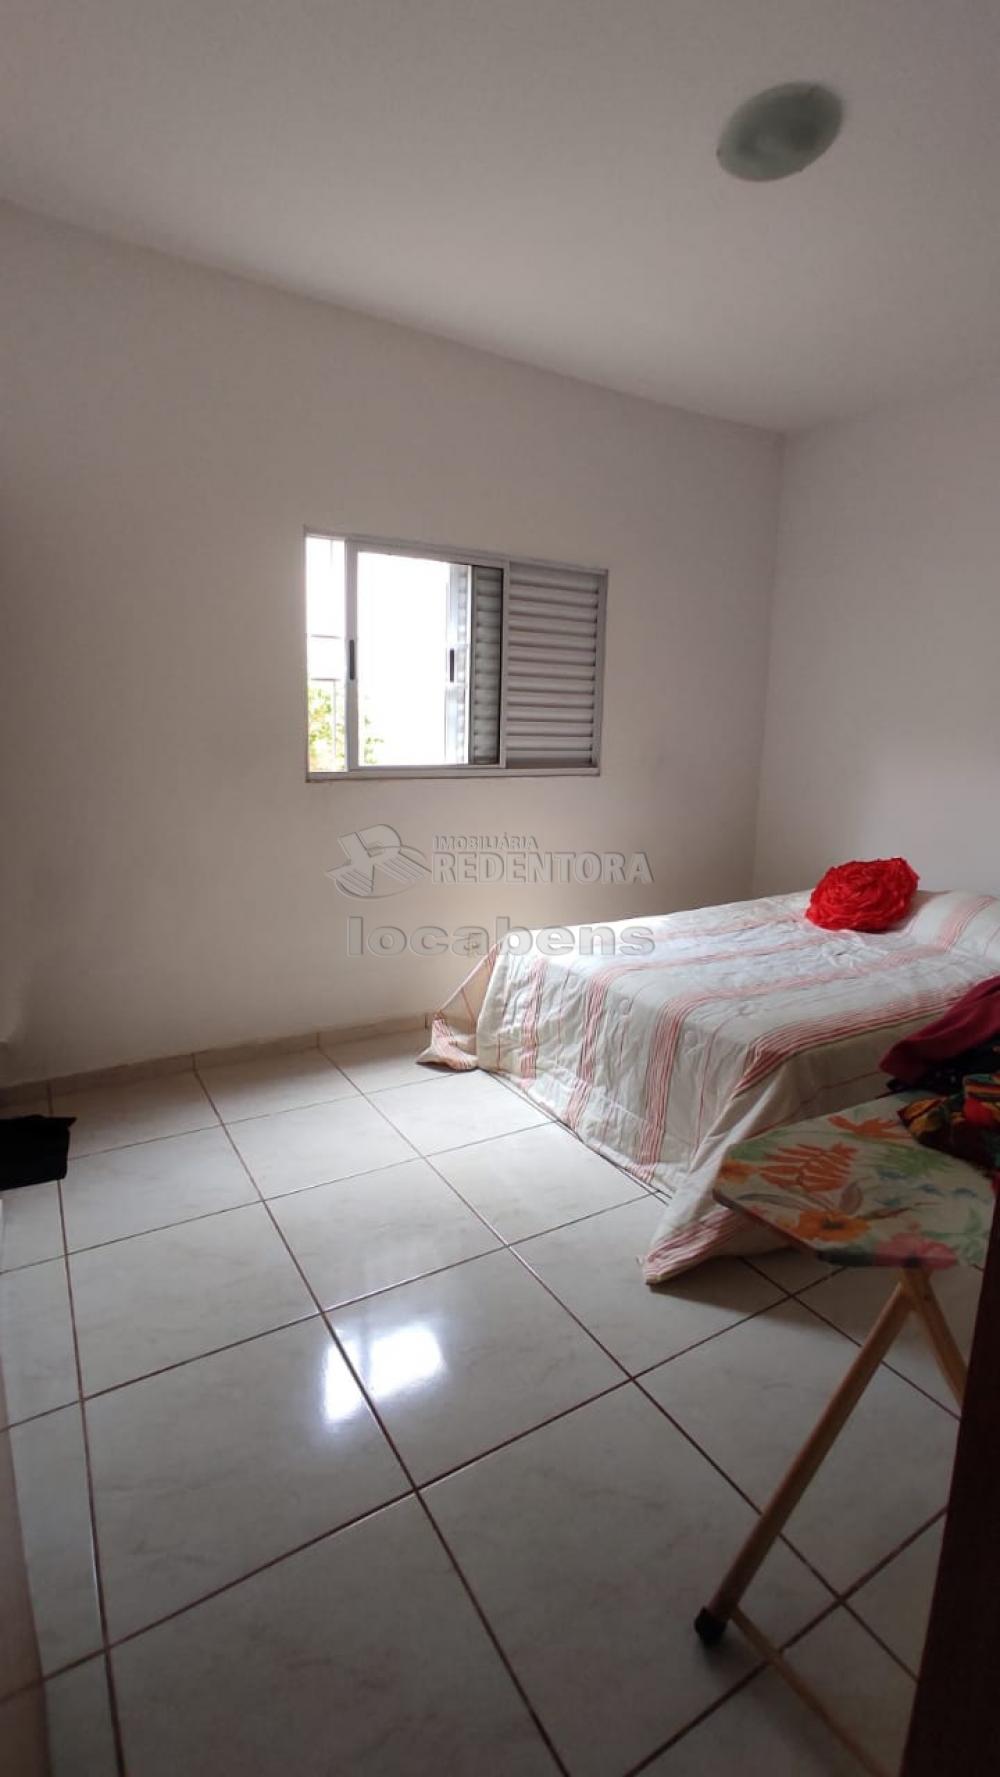 Comprar Casa / Padrão em São José do Rio Preto R$ 270.000,00 - Foto 2